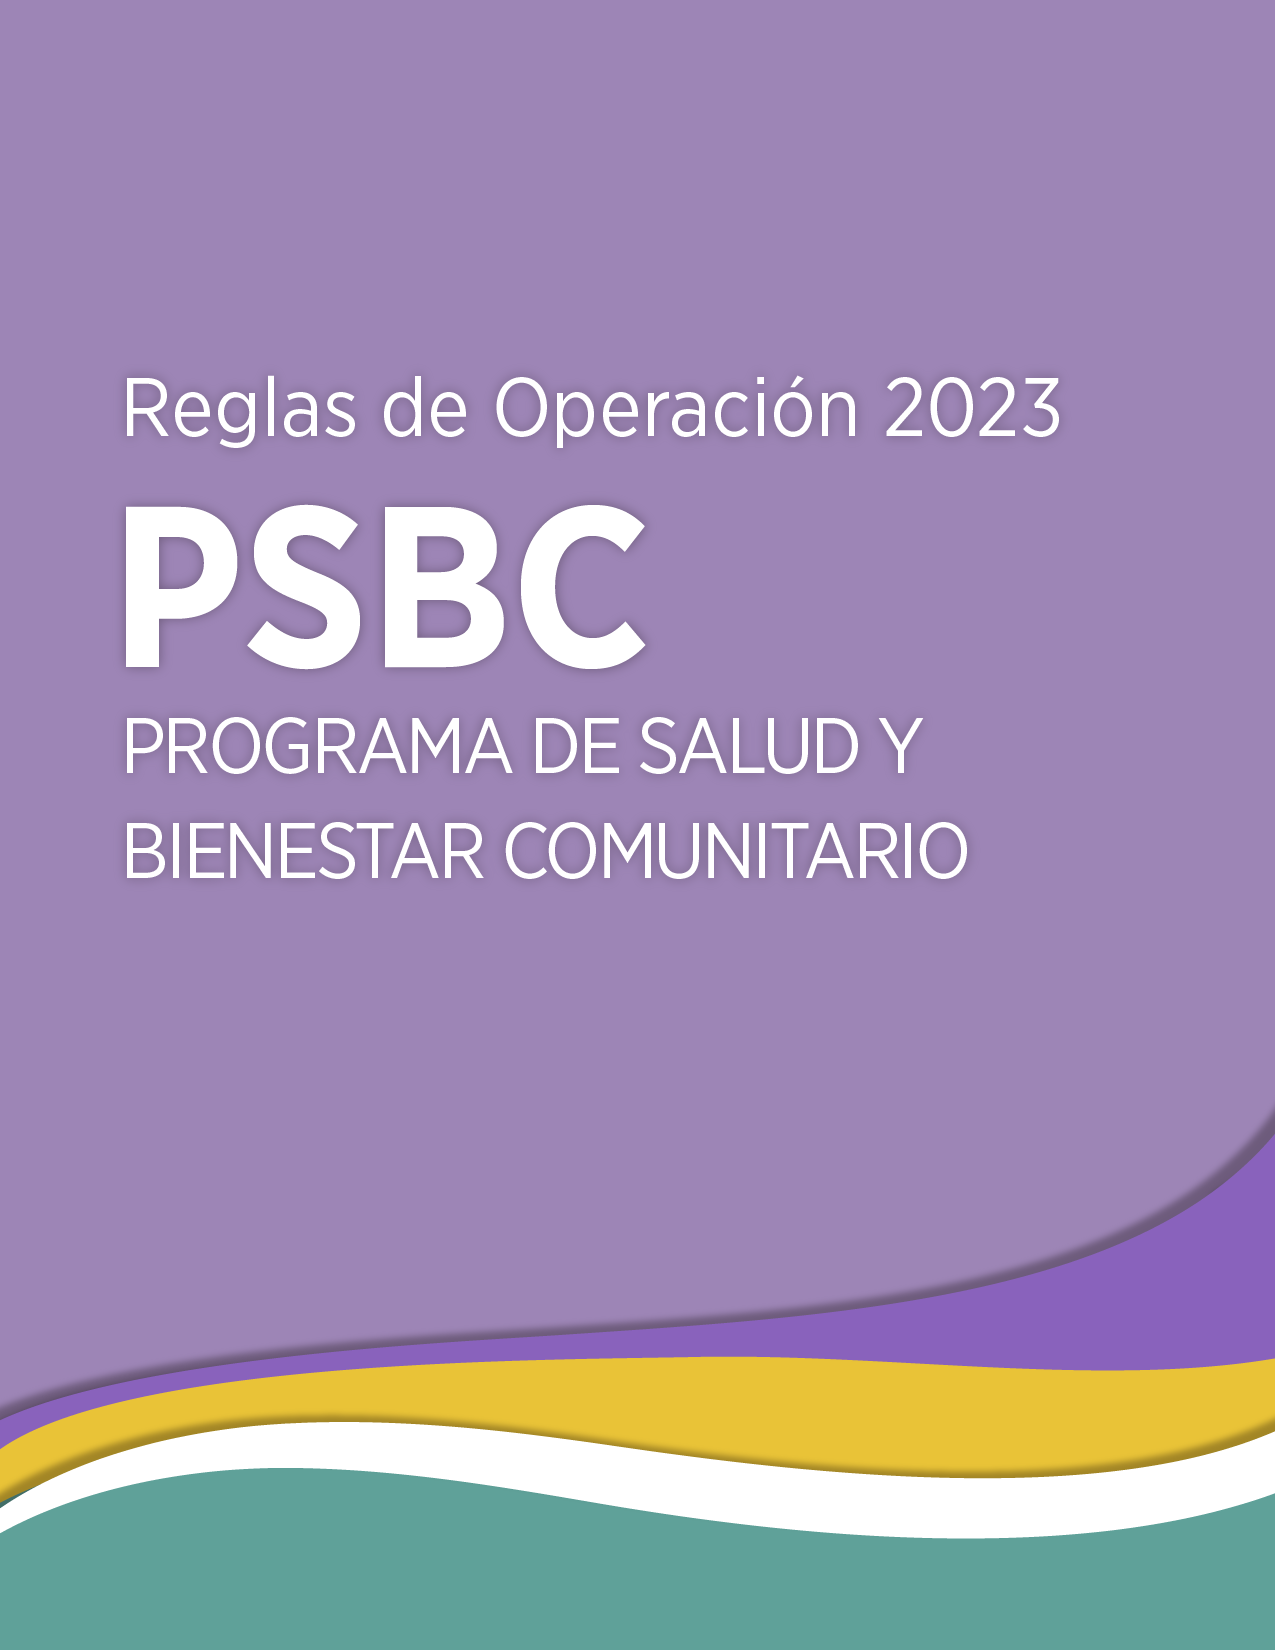 RO Programa de Salud y Bienestar Comunitario, PSBC 2023